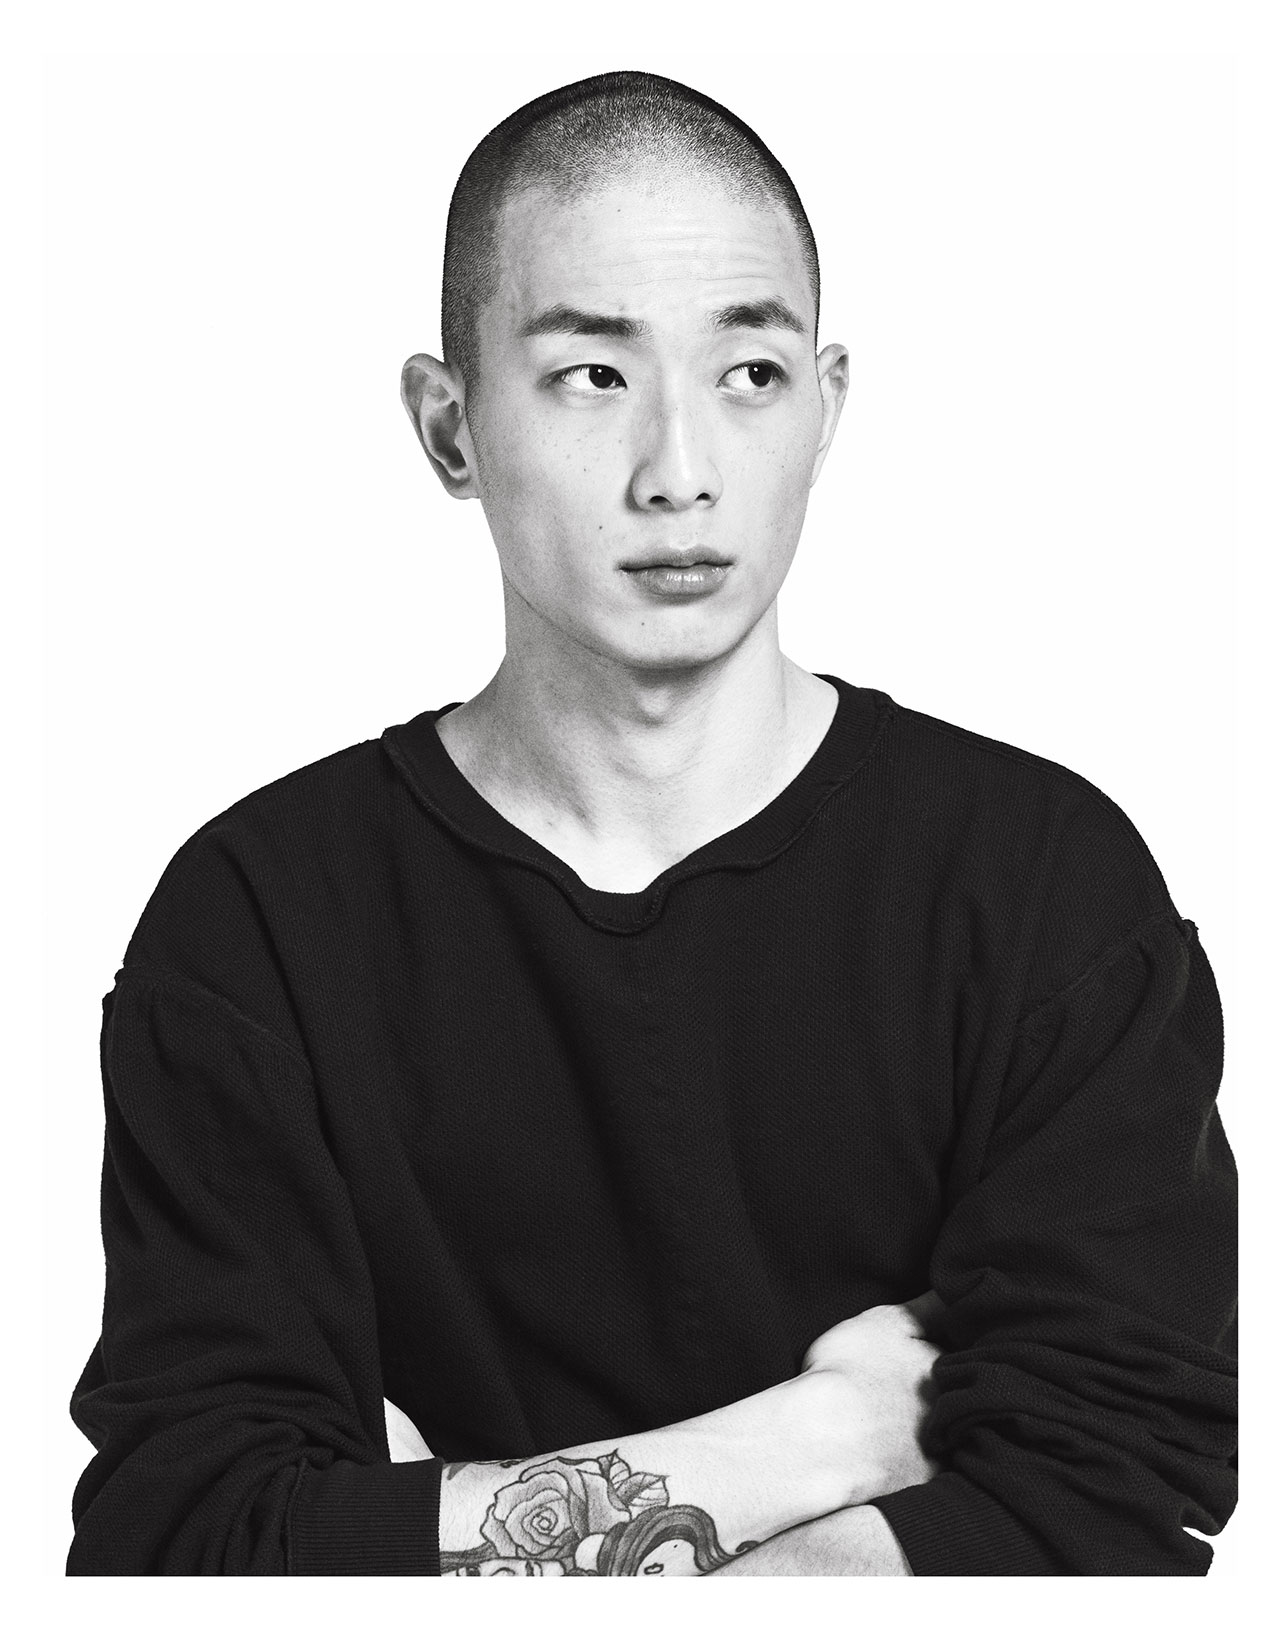 Sung Jin Park by Hong Jang Hyun for Models.com